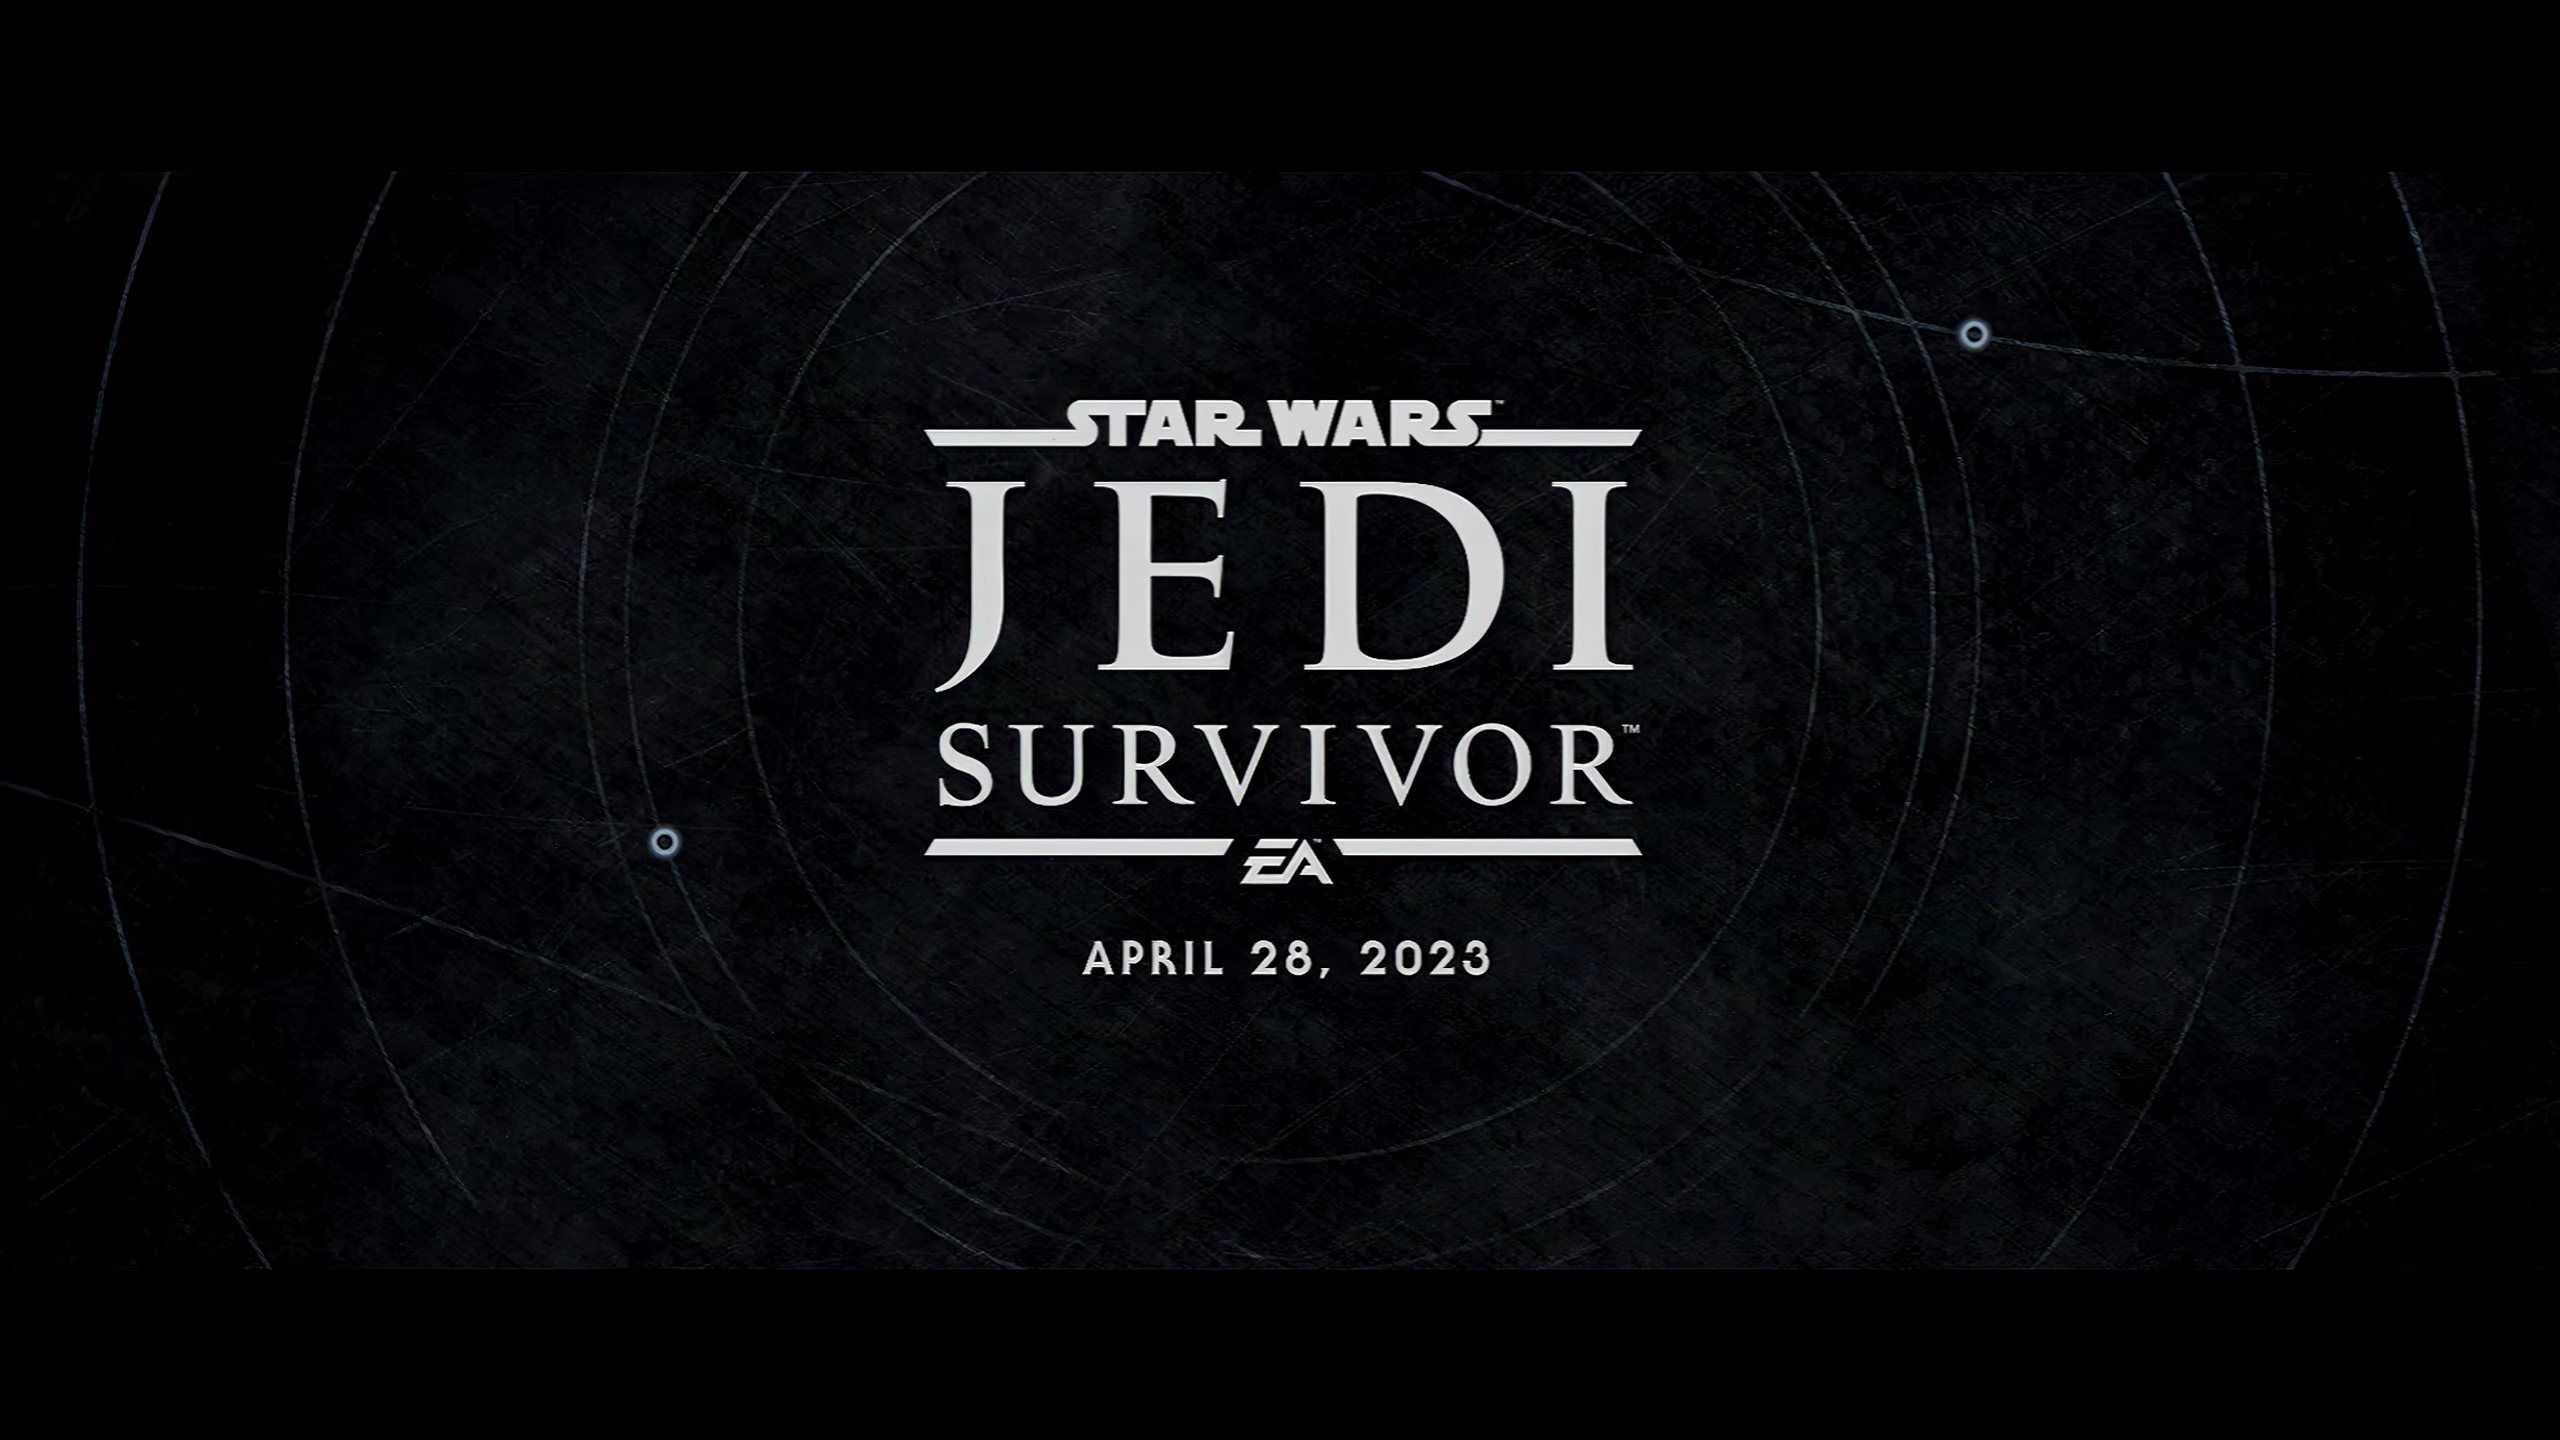 Star wars jedi survivor ea. Джедай игра 2023. Star Wars Jedi: Survivor™. Star Wars Jedi: Survivor™️ gameblay. Jedi Survivor poster.